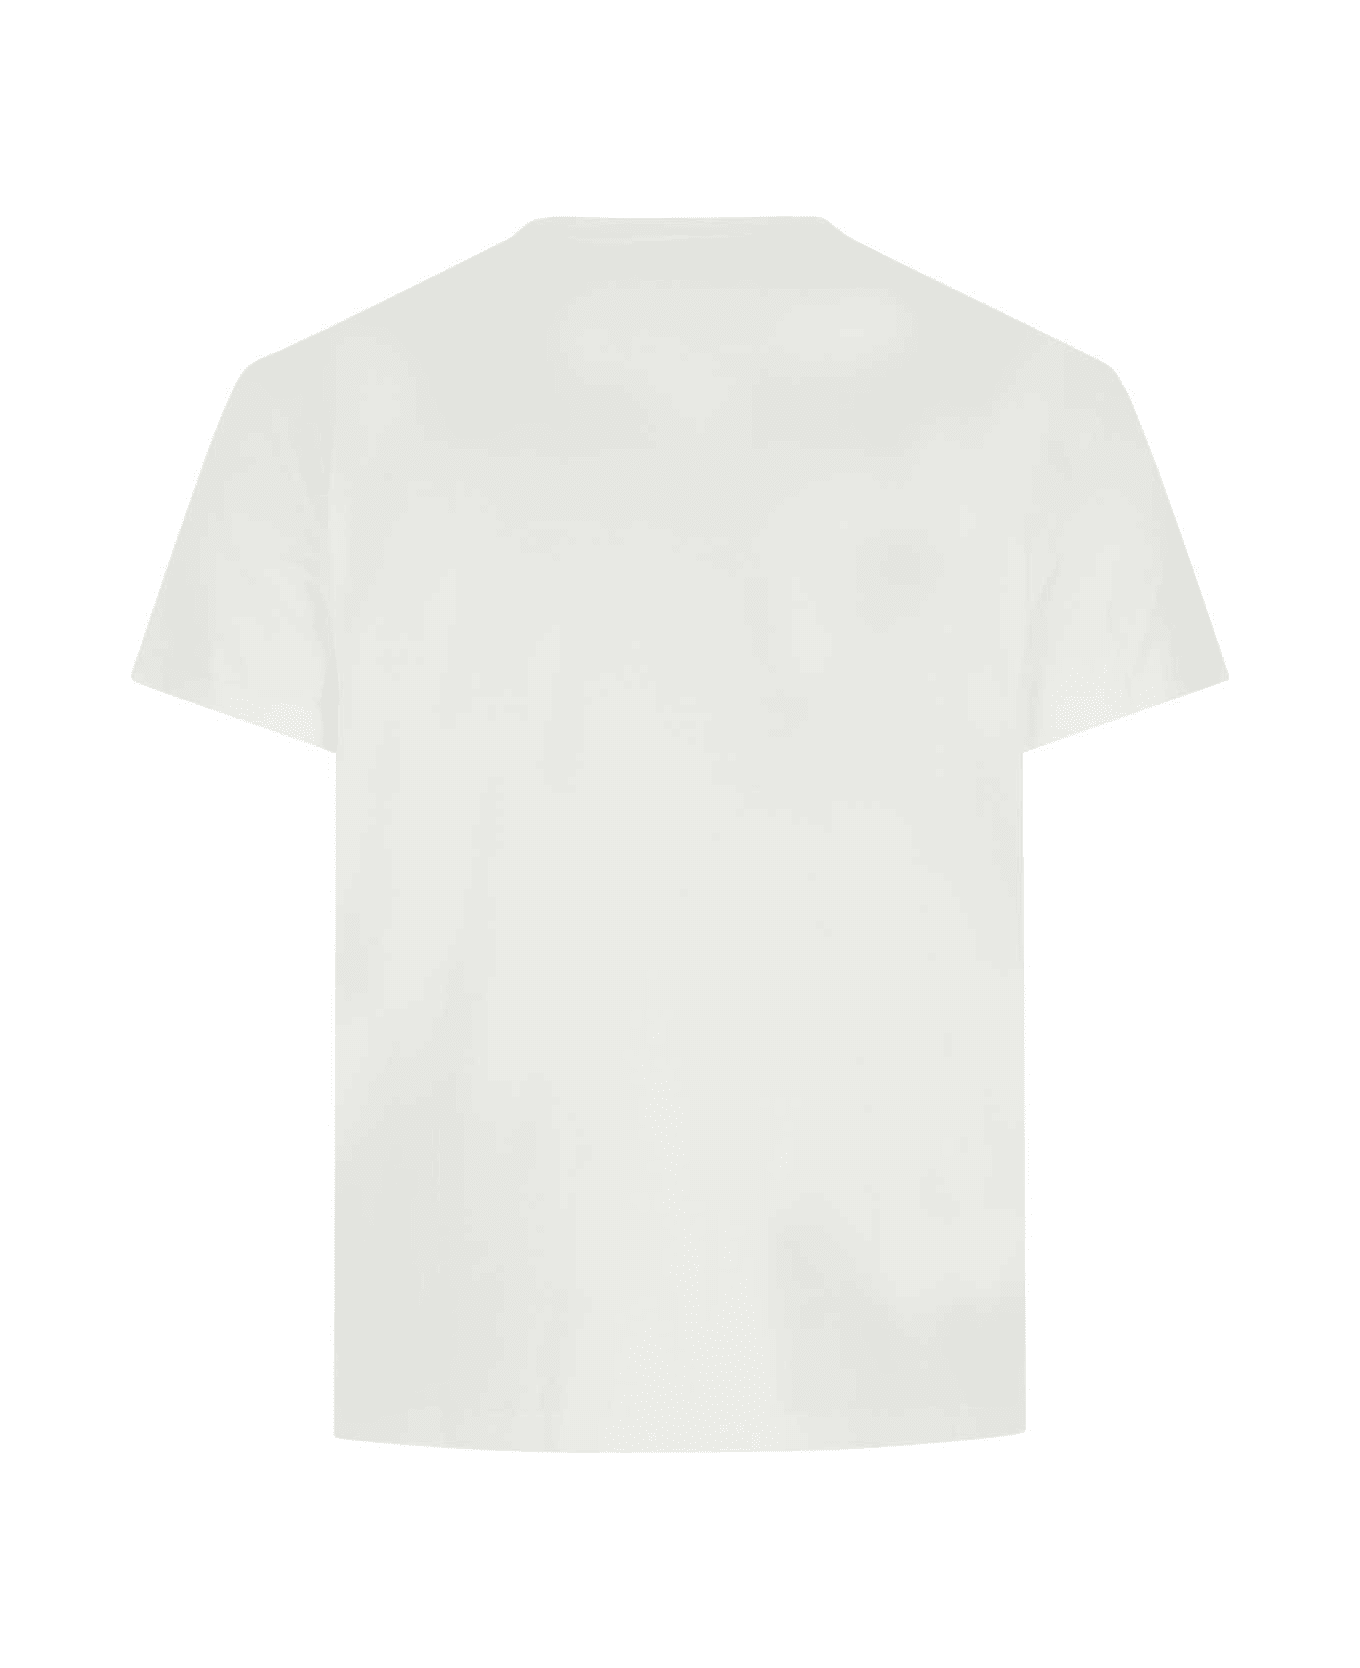 Maison Margiela White Cotton T-shirt - 994 シャツ